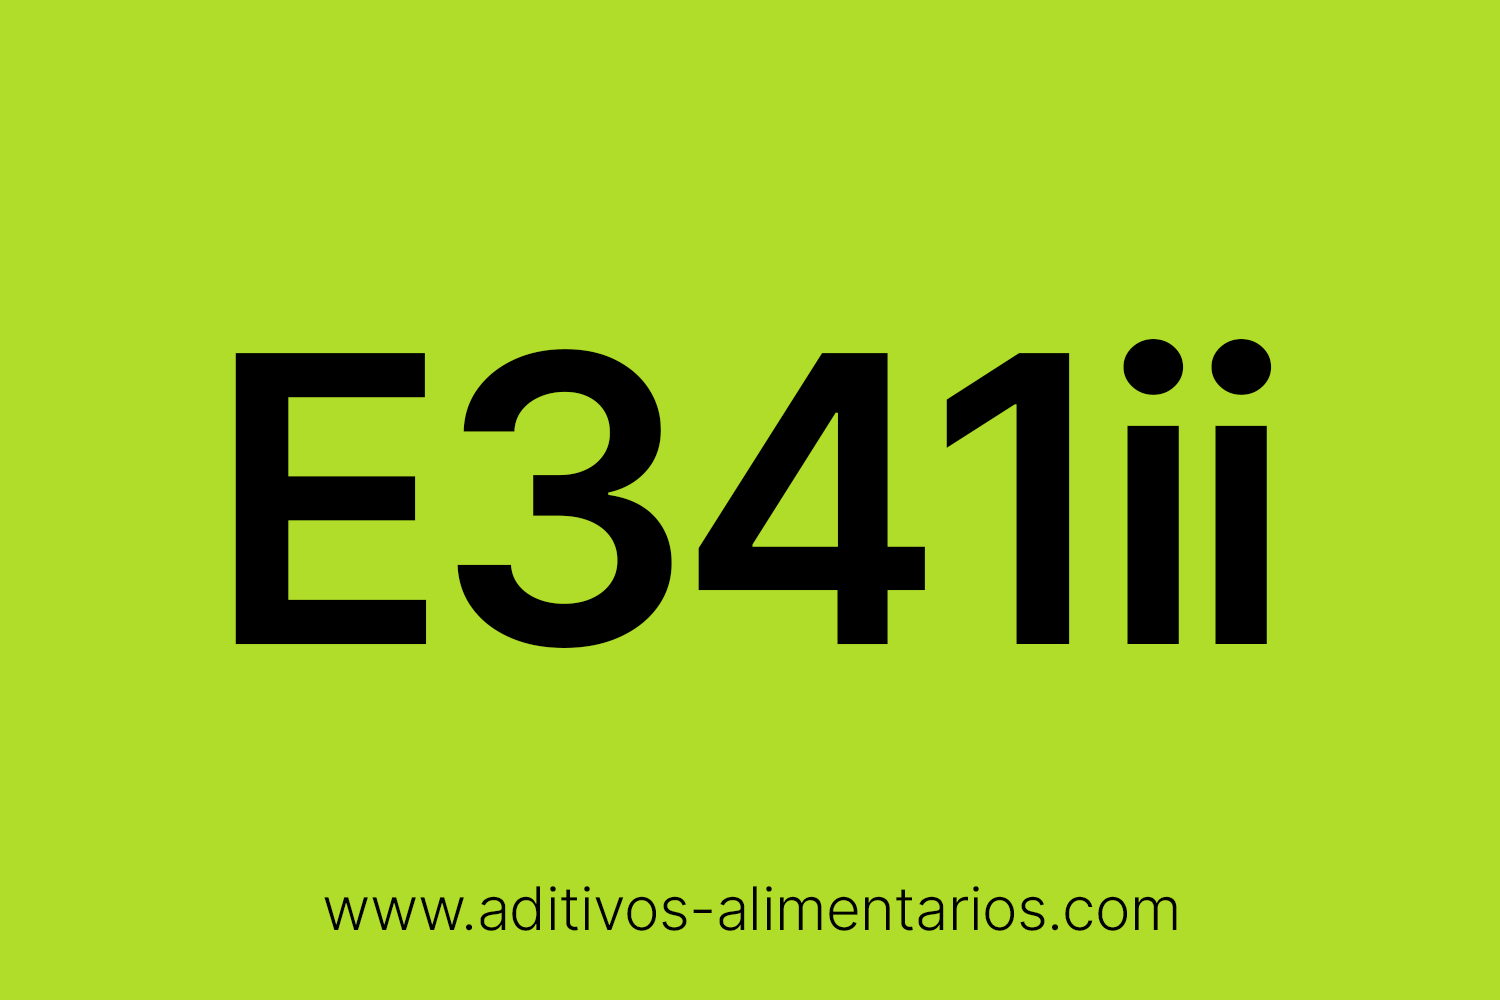 Aditivo Alimentario - E341ii - Fosfato Dicálcico